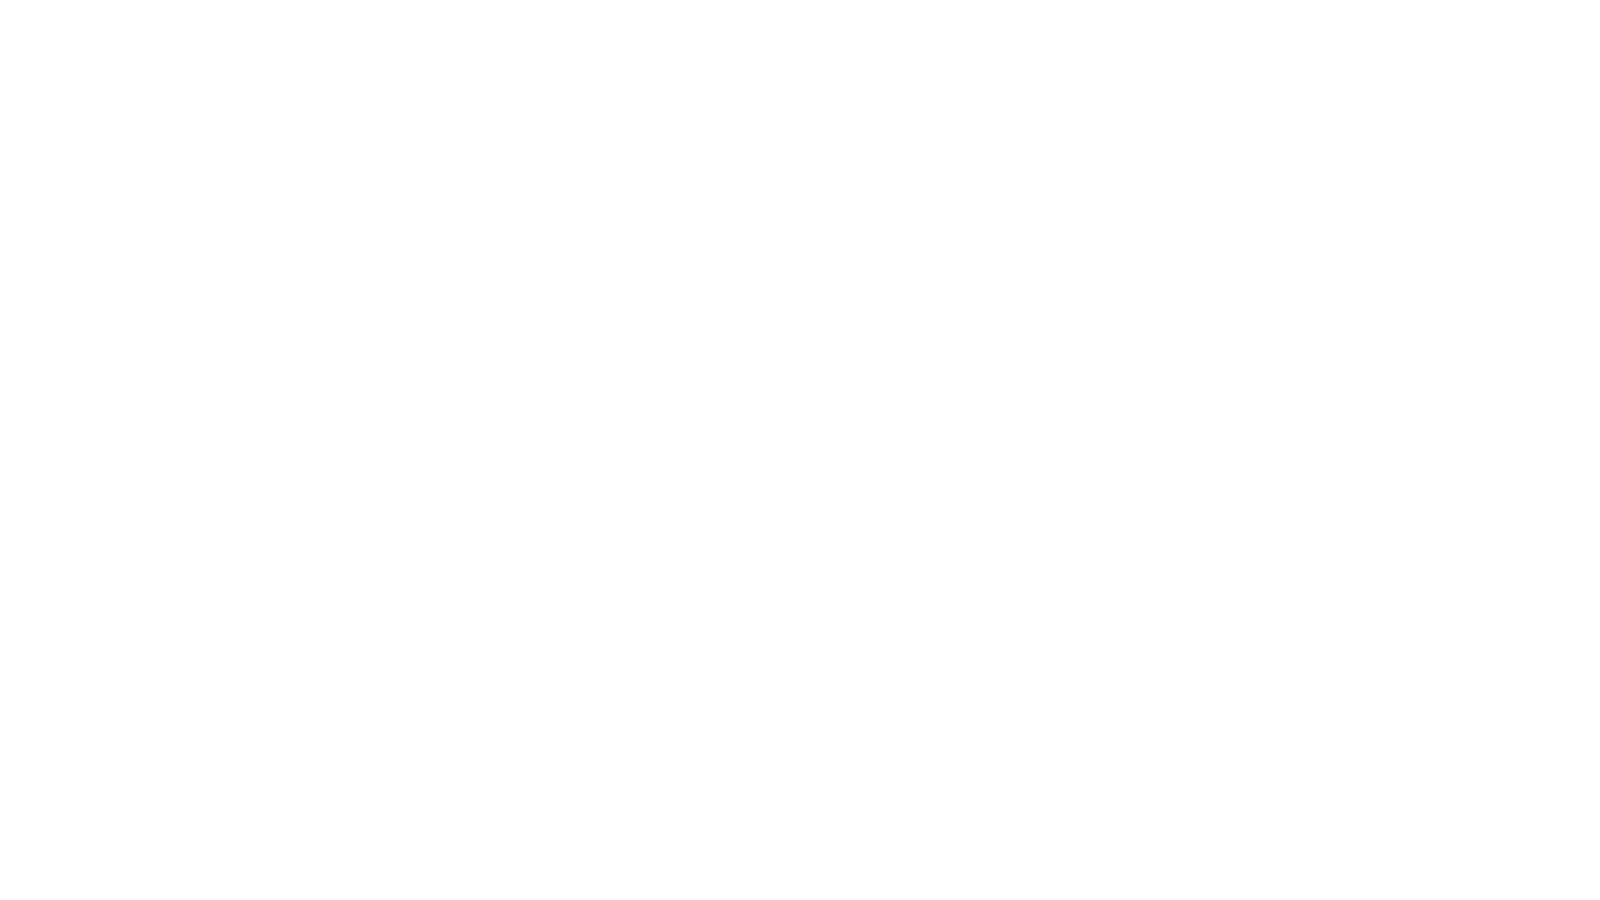 প্রতিনিধি শামীম আনসারীর তথ্য চিত্রে ডেস্ক রিপোর্ট-
আগামী দ্বাদশ জাতীয় সংসদ নির্বাচনকে সামনে রেখে নির্বাচনী প্রচারণায় ব্যস্ত সময় পার করছেন নওগাঁ-৬ (আত্রাই/ রানীনগর) আসন থেকে নৌকা প্রতীকে দলীয় মনোনয়ন প্রত্যাশী ড. মো. ইউনুস আলী প্রামানিক। ইতিমধ্যেই নৌকা প্রতীকে মনোনয়ন প্রাপ্তির লক্ষে মাঠ চষে বেড়াচ্ছেন অবসরপ্রাপ্ত অতিরিক্ত এ সচিব। তিনি আওয়ামী লীগের নানা উন্নয়ন তুলে ধরে মানুষের কাছে নৌকায় ভোট চাচ্ছেন। রাণীনগর উপজেলা আওয়ামী লীগের সহ-সভাপতি ইউনুস আলী বিভিন্ন সময়ে বিপদে আপদে এই দুই উপজেলাবাসীর পাশে থাকার প্রতিশ্রুতি দিয়ে ভোট প্রার্থনা করছেন। আর সাধারণ ভোটাররা বলছেন সৎ, যোগ্য ও বিপদের সময় যারা পাশে দাঁড়াবেন তাদেরকিই এবার তারা ভোট দিবেন।  

About Us

‘Banglakhaborbd.com’ is an online Bengali news portal of Bangladesh. Banglakhaborbd is a Bengali word. Banglakhaborbd means the news communication of Bangladesh. The theme of the news Portal is ‘Always stand for truth’. Banglakhaborbd.com is a Bangladesh-based multimedia platform for news, opinion, and entertainment. It’s a 24/7/365 platform to keep the readers and audience updated with each moment’s national and international developments.

Journalism based on communications. Communication is the main part of journalism. We believe that communication is our Power. In Bangladesh, we would like to make communication from people to people, man to man by using real journalism. Our destination is Professional Journalism.

Media or news portals are used to inform the people, educate the people, entertain the people, and pursue the people. We believe we can deliver the people real or right information which will build our nations educated and wise. By using real journalism, we will able to make our people know the right things.

In journalism, there are some rules and regulations. We believe we should always obey the rules and regulations to make real journalism.

The news portal has some sections – such as politics, administrative affairs, expatriate affairs, education, health, entertainment, lifestyle, science and technology, international events, communications, law and order, crime, nature, religious affairs, agriculture, and others. We have about 100 journalists to cover the divisions. Some of them are working on the news desk and others are working in the field.

The national and international news is being published on our news portal. We try to post the real news as fast as we can. In Bangladesh, there are 64 districts. We have collected expert and professional newsmen from the districts and appointed them as district correspondents. We believe they will give their best services to our news portal.